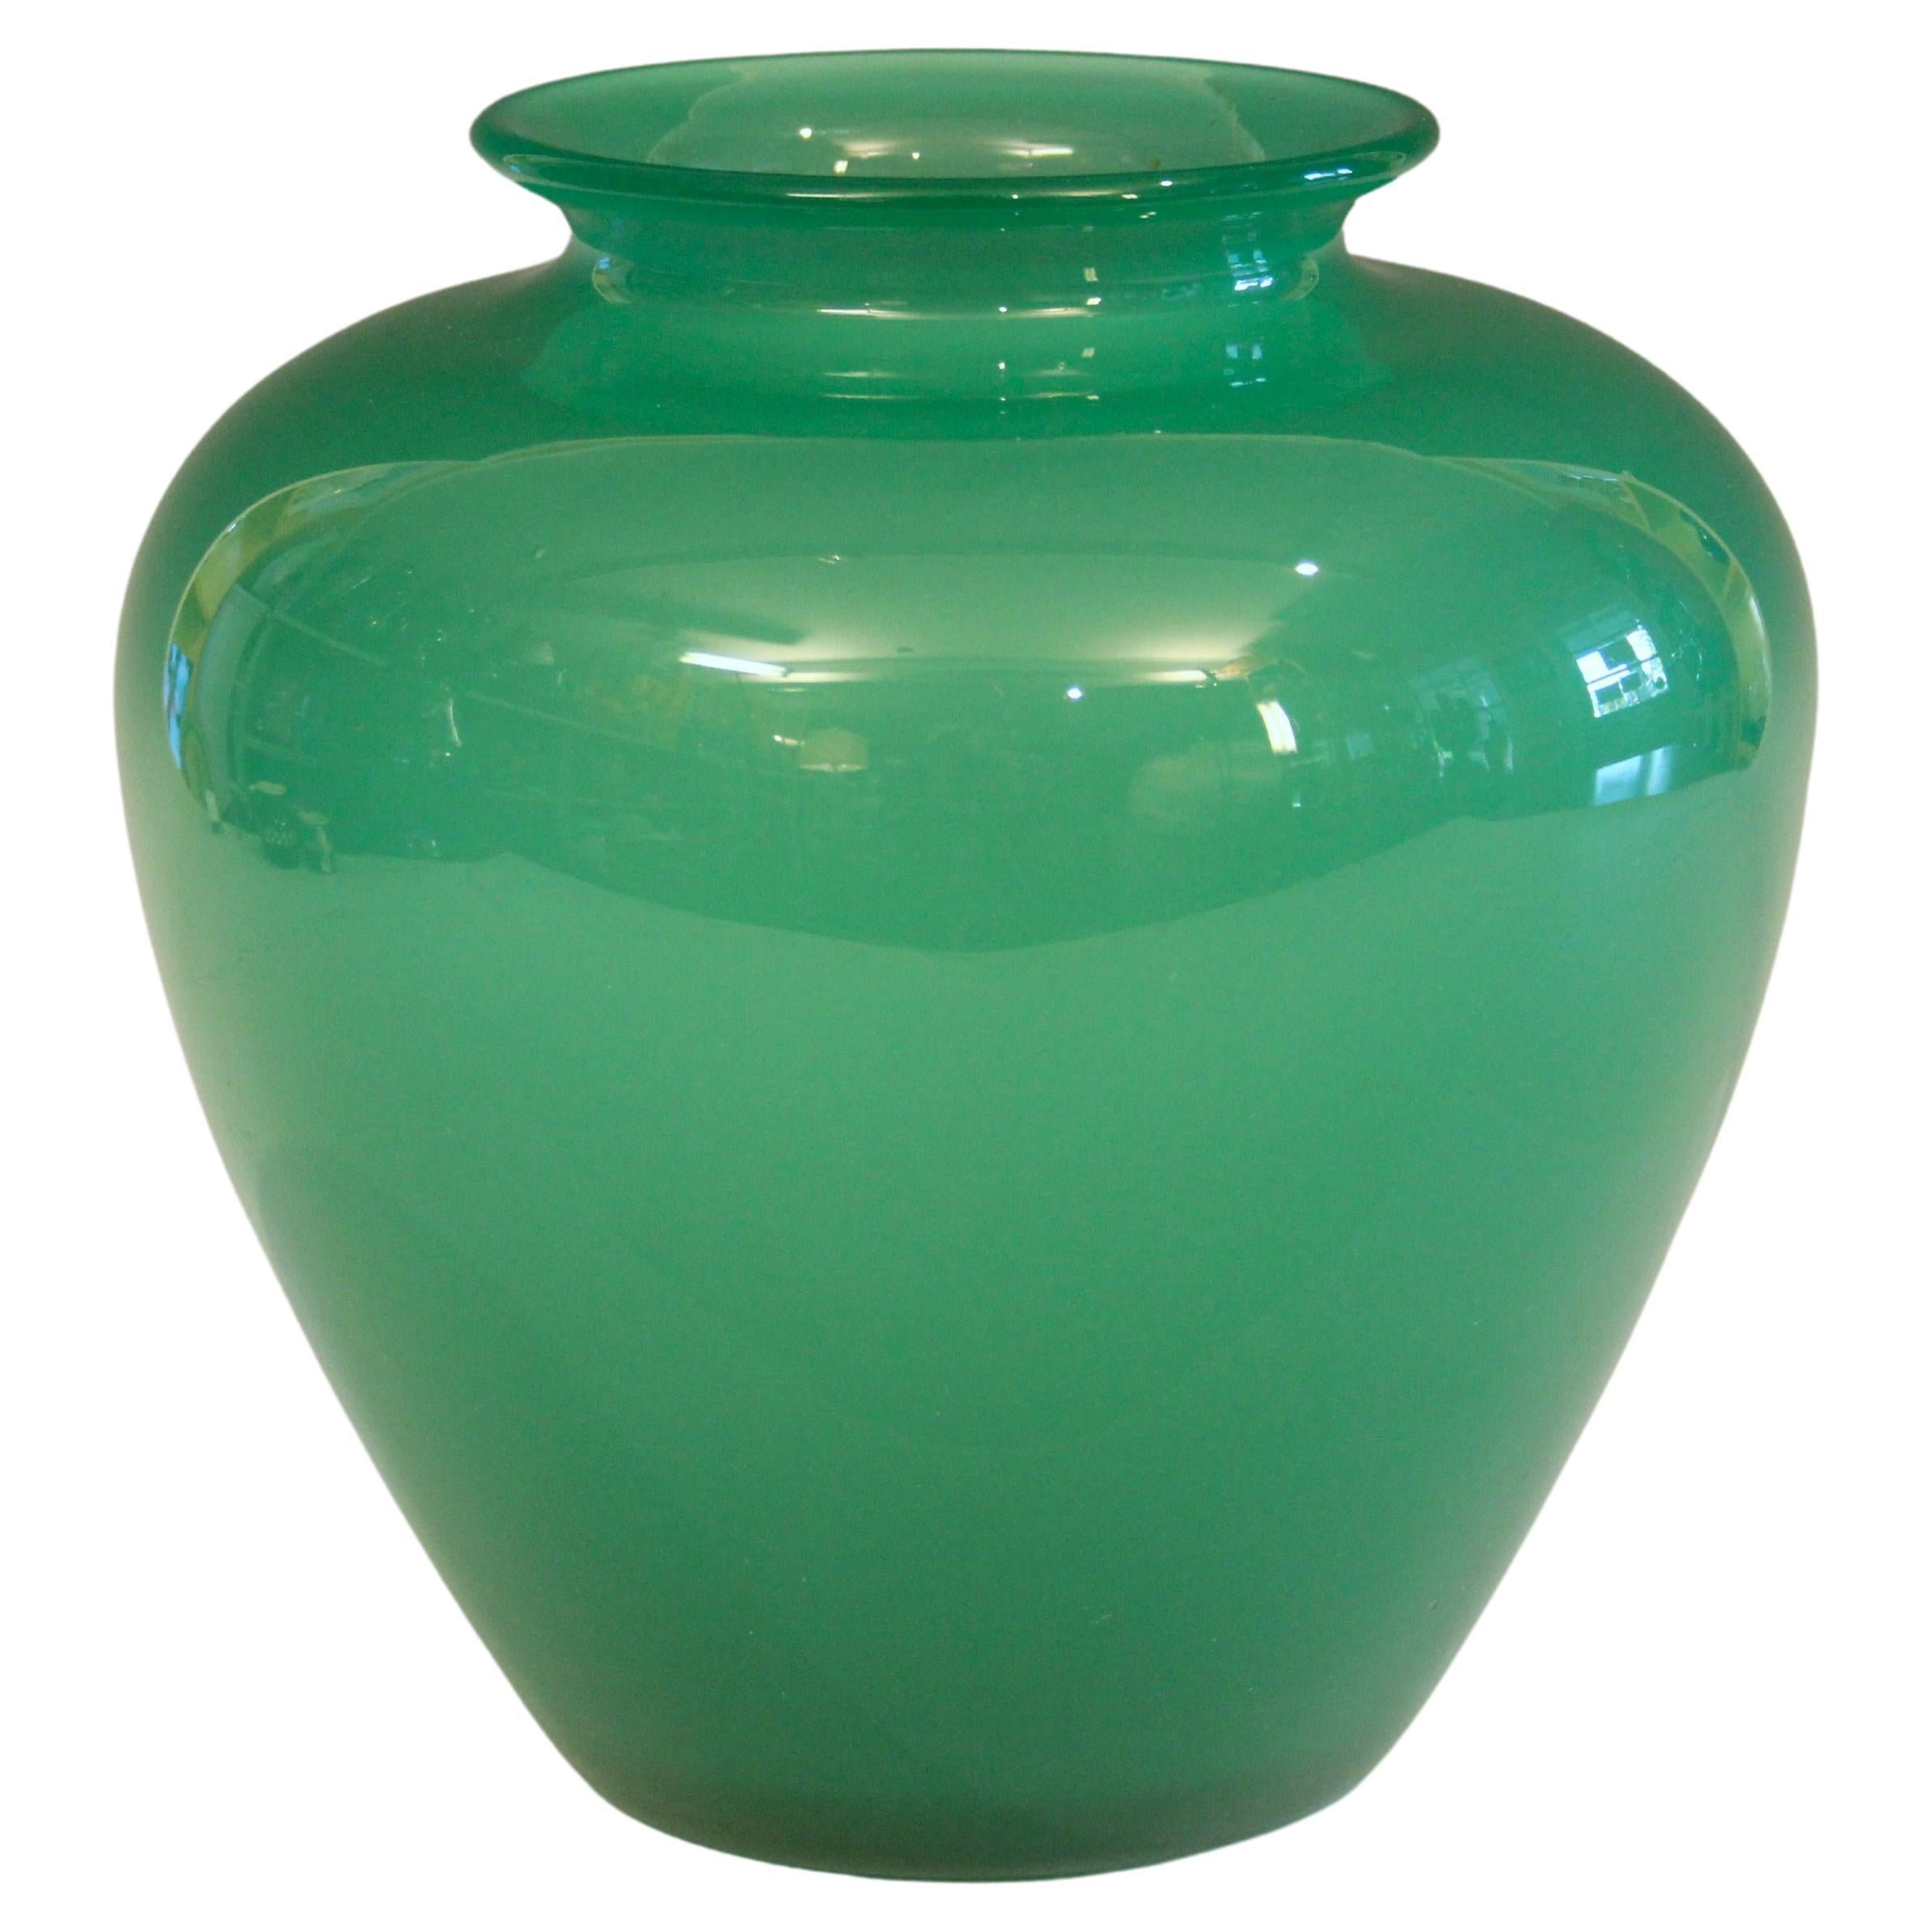 Antique Steuben Glass Vase Carder Apple Jade Green Art Deco Signed 8" For Sale